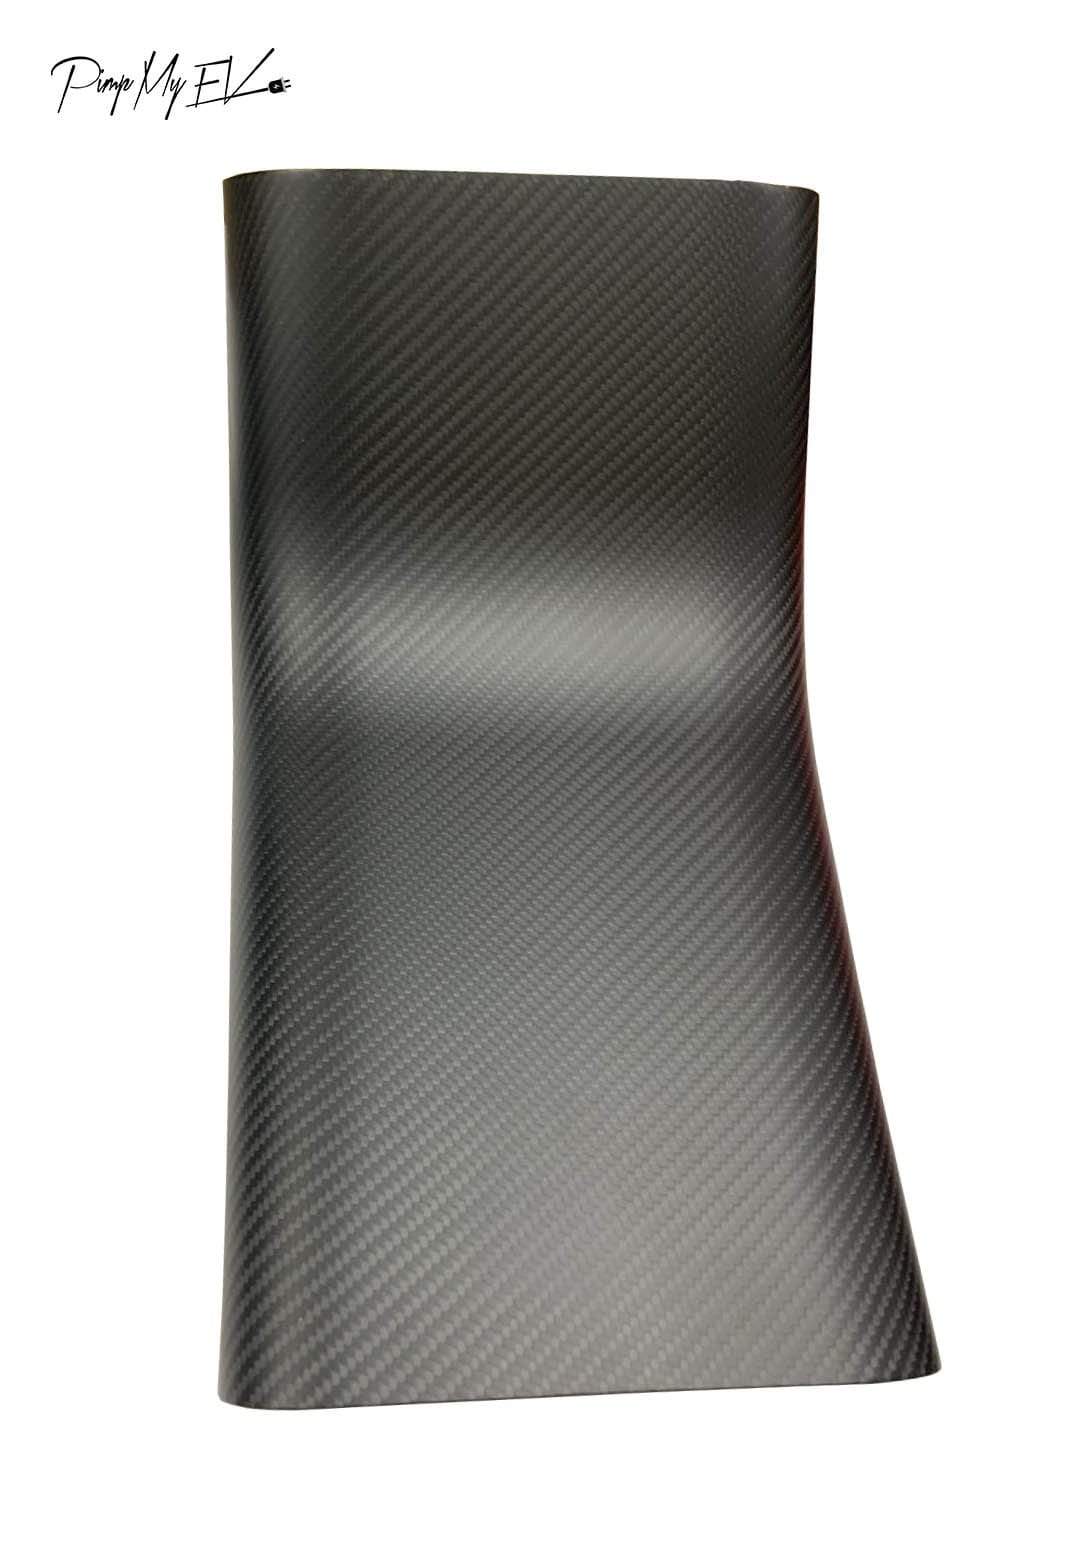 Genuine Carbon Fiber Rear AC Vent Lower Cover For Model 3 (Matte) - PimpMyEV